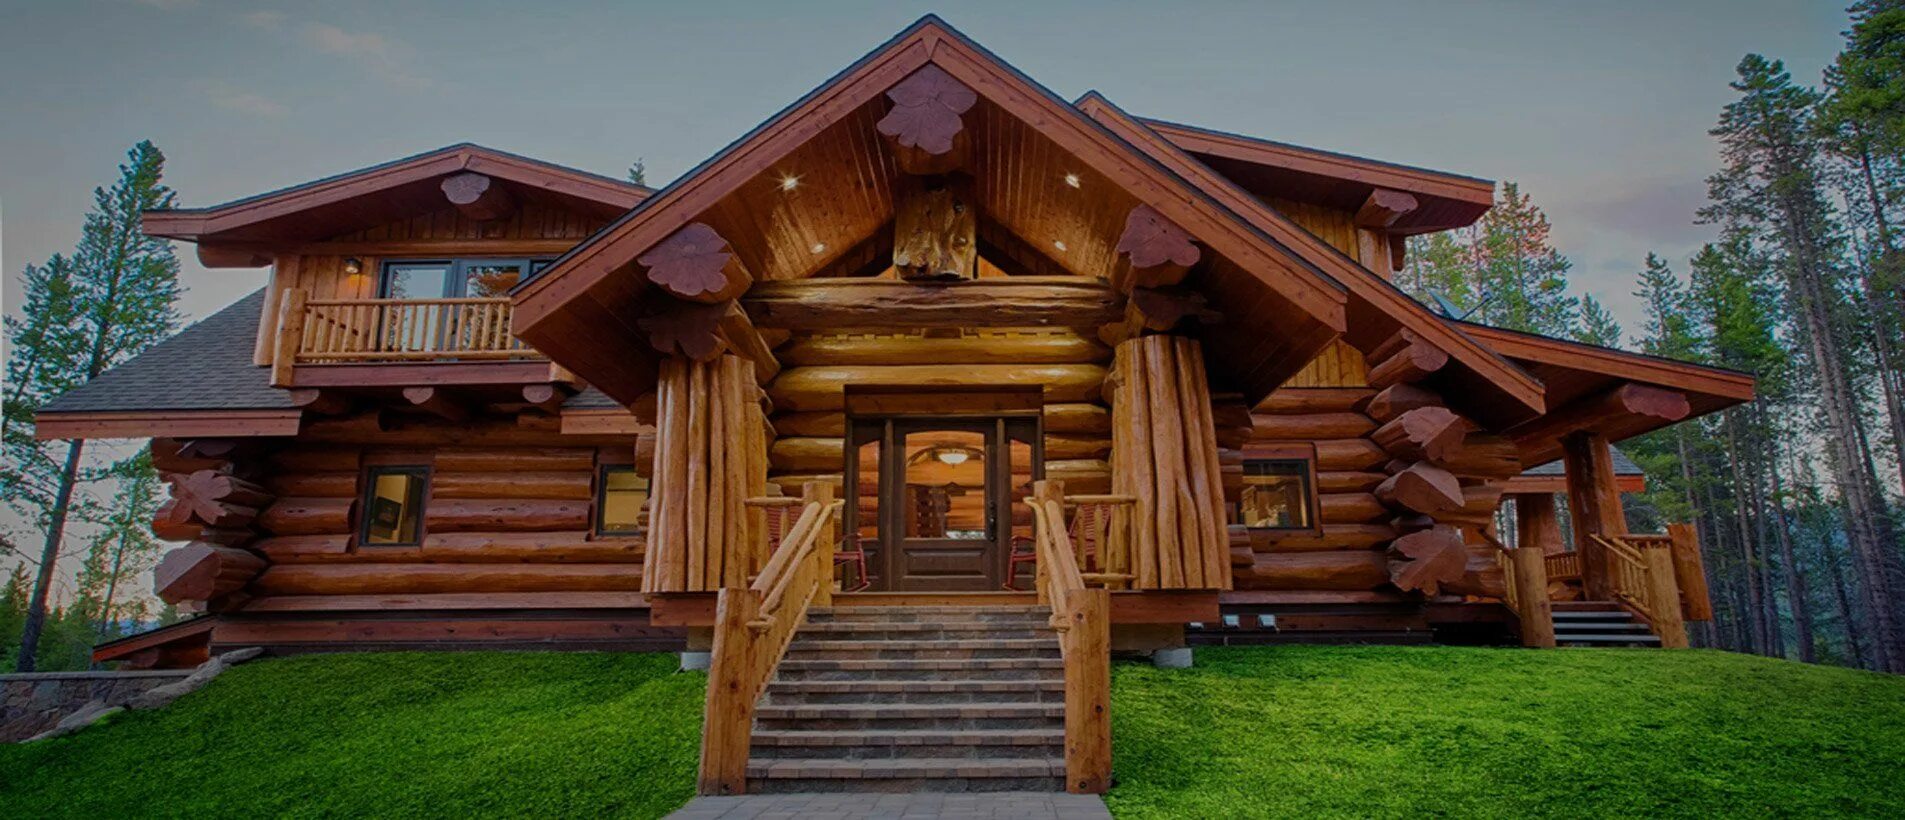 Сибирский кедр элитный сруб. Дом из красного канадского кедра - "Викин. Канадский кедр лафет. Дом из оцилиндрованного бревна Викинг. Канадские рубленные